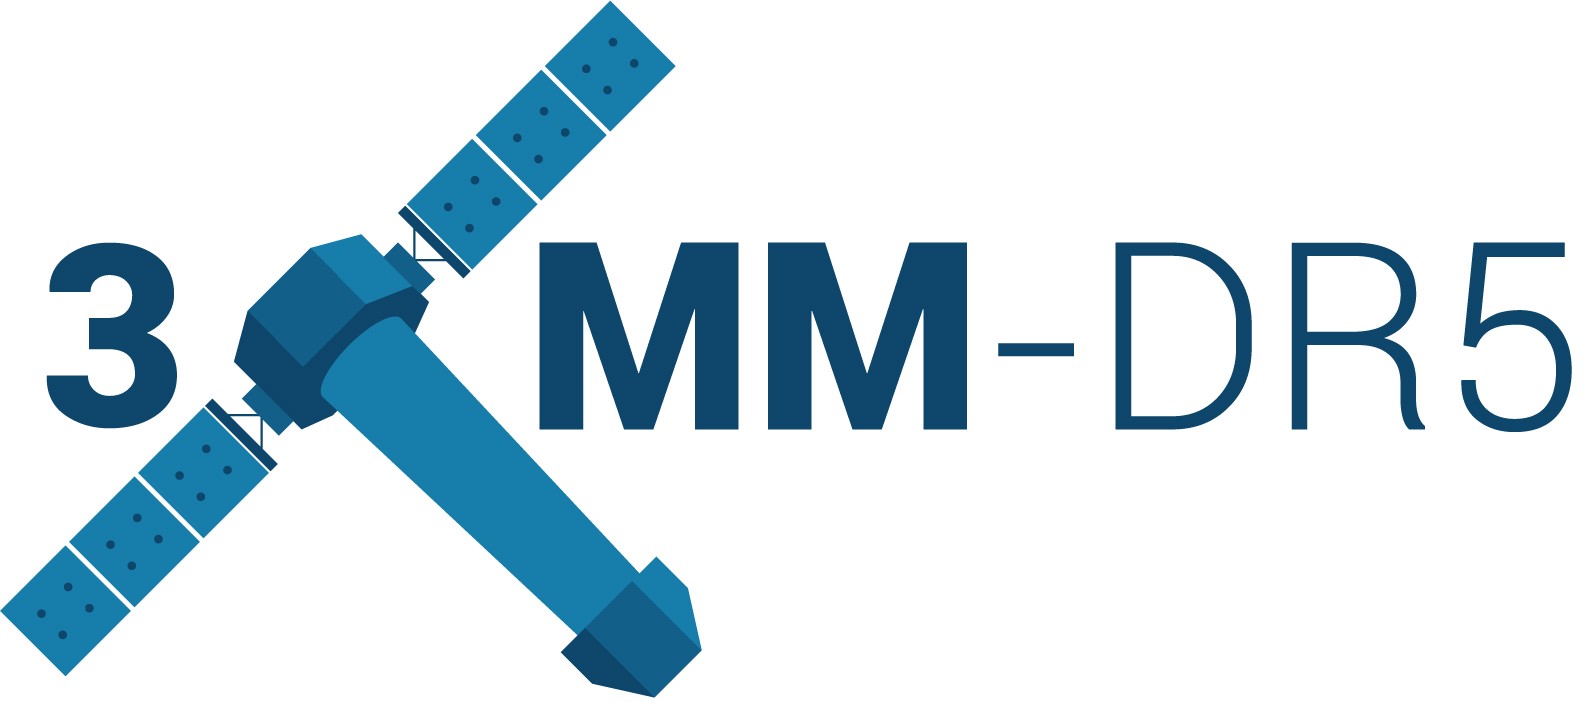 3XMM-DR5 logo